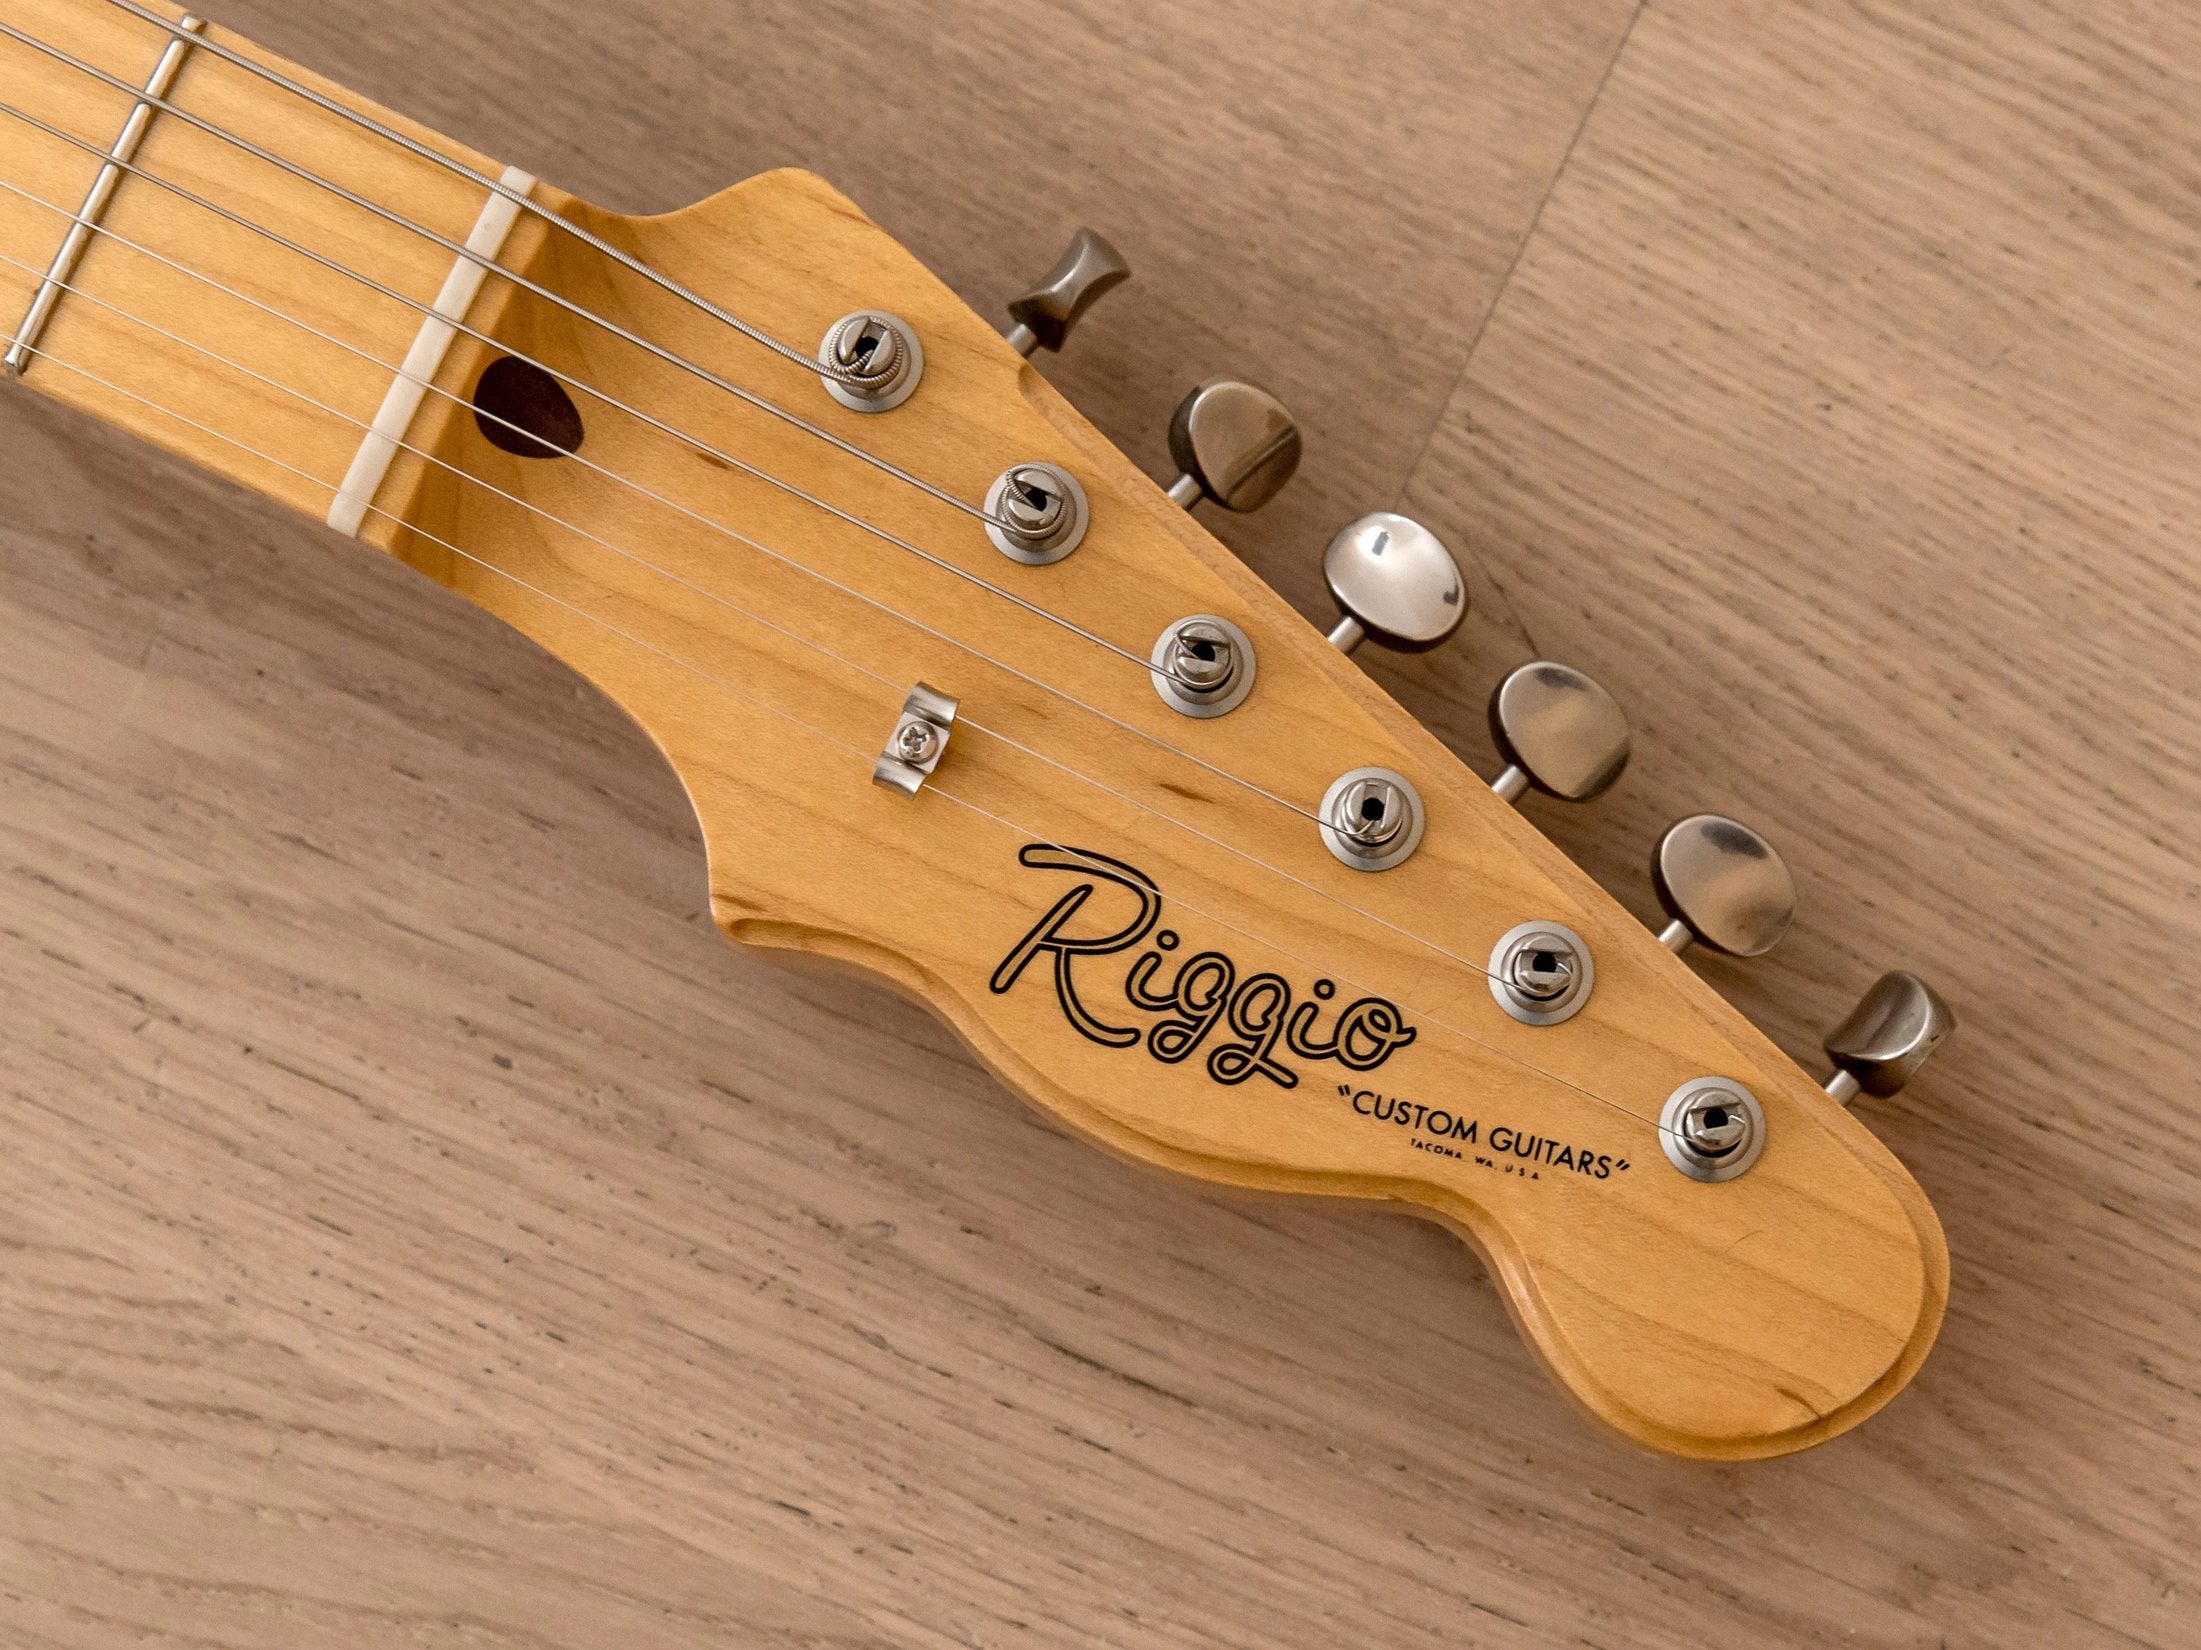 Riggio Custom Guitars Tango Thinline, Black Paisley w/ Mastery M1, Bigsby B5F, G&G Case